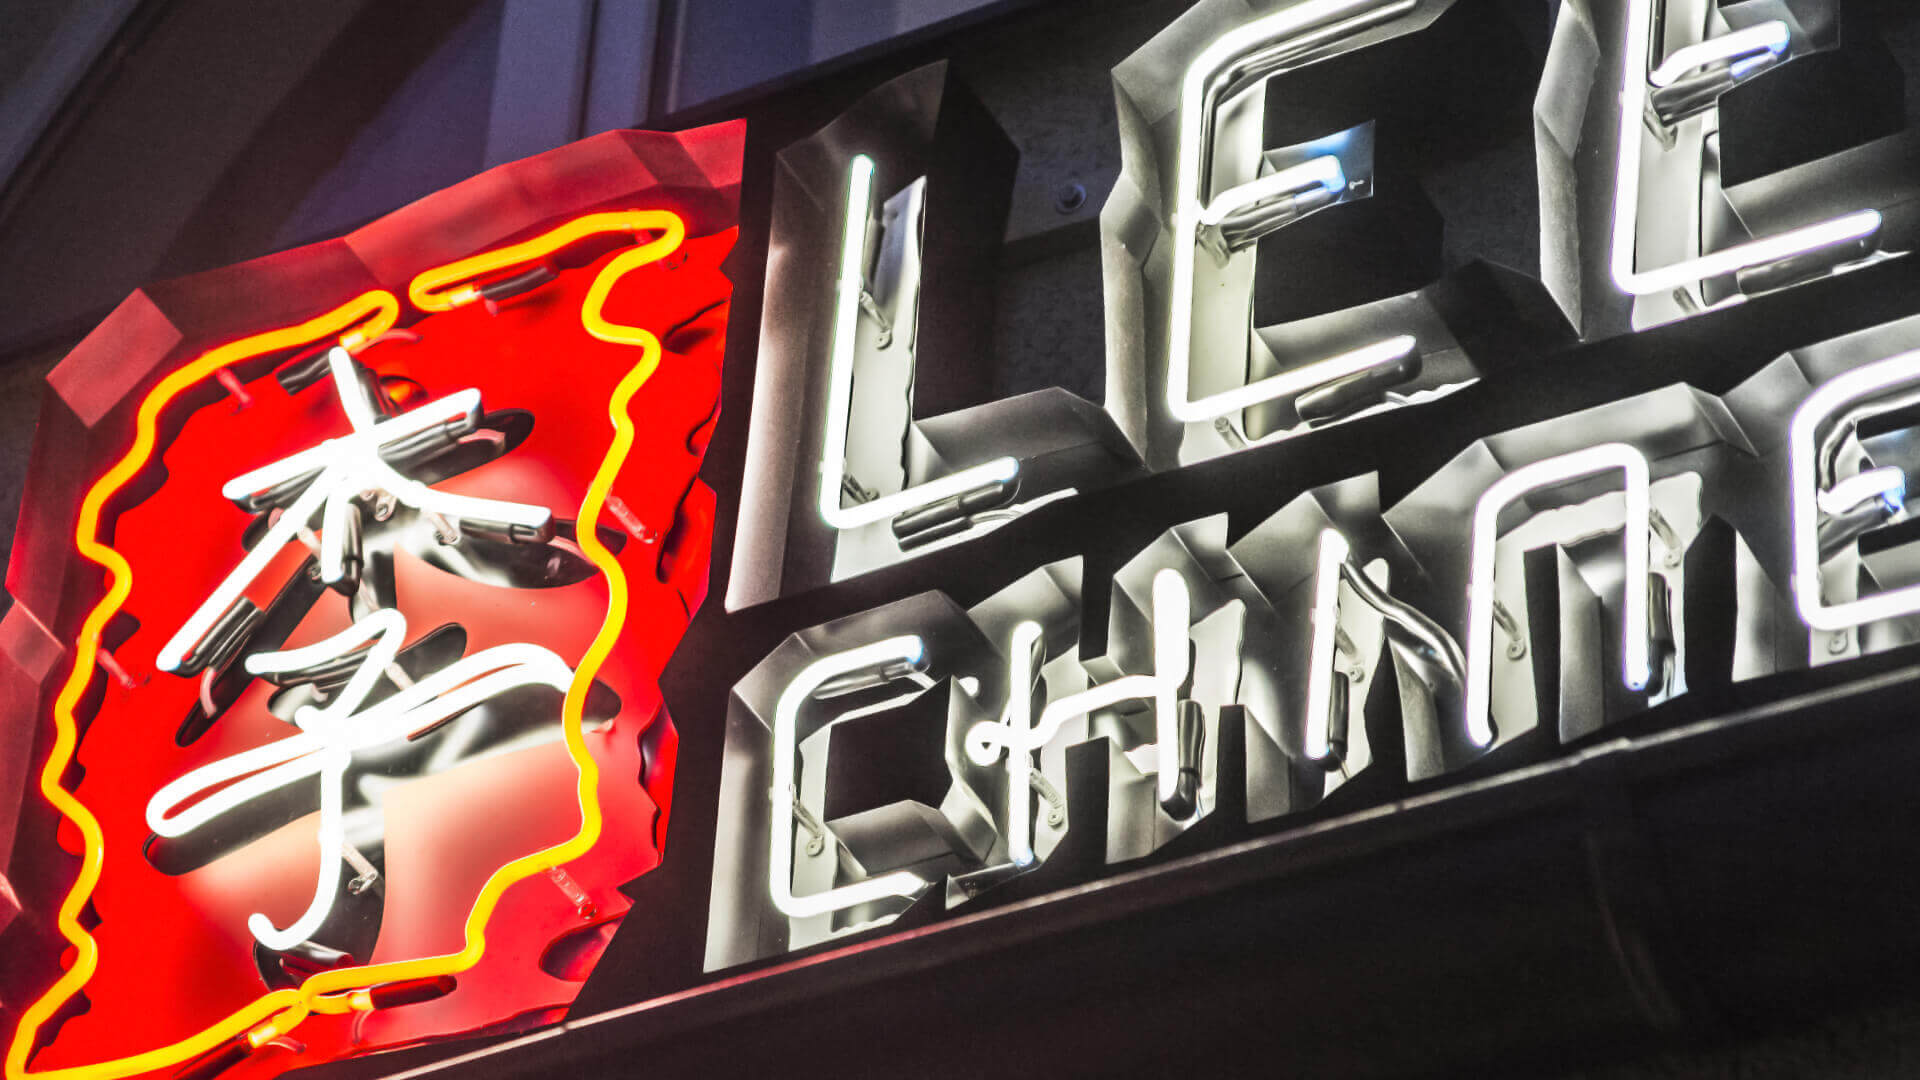 Lees Chines - neon-lees-cinese-neon-sopra-entrata-al-ristorante-neon-sul-muro-neon-sull'esterno-neon-in-melate-rusting-logo-segno-cinese-lettera-segni-neon-lites-illuminato-china-restuarant-gdansk